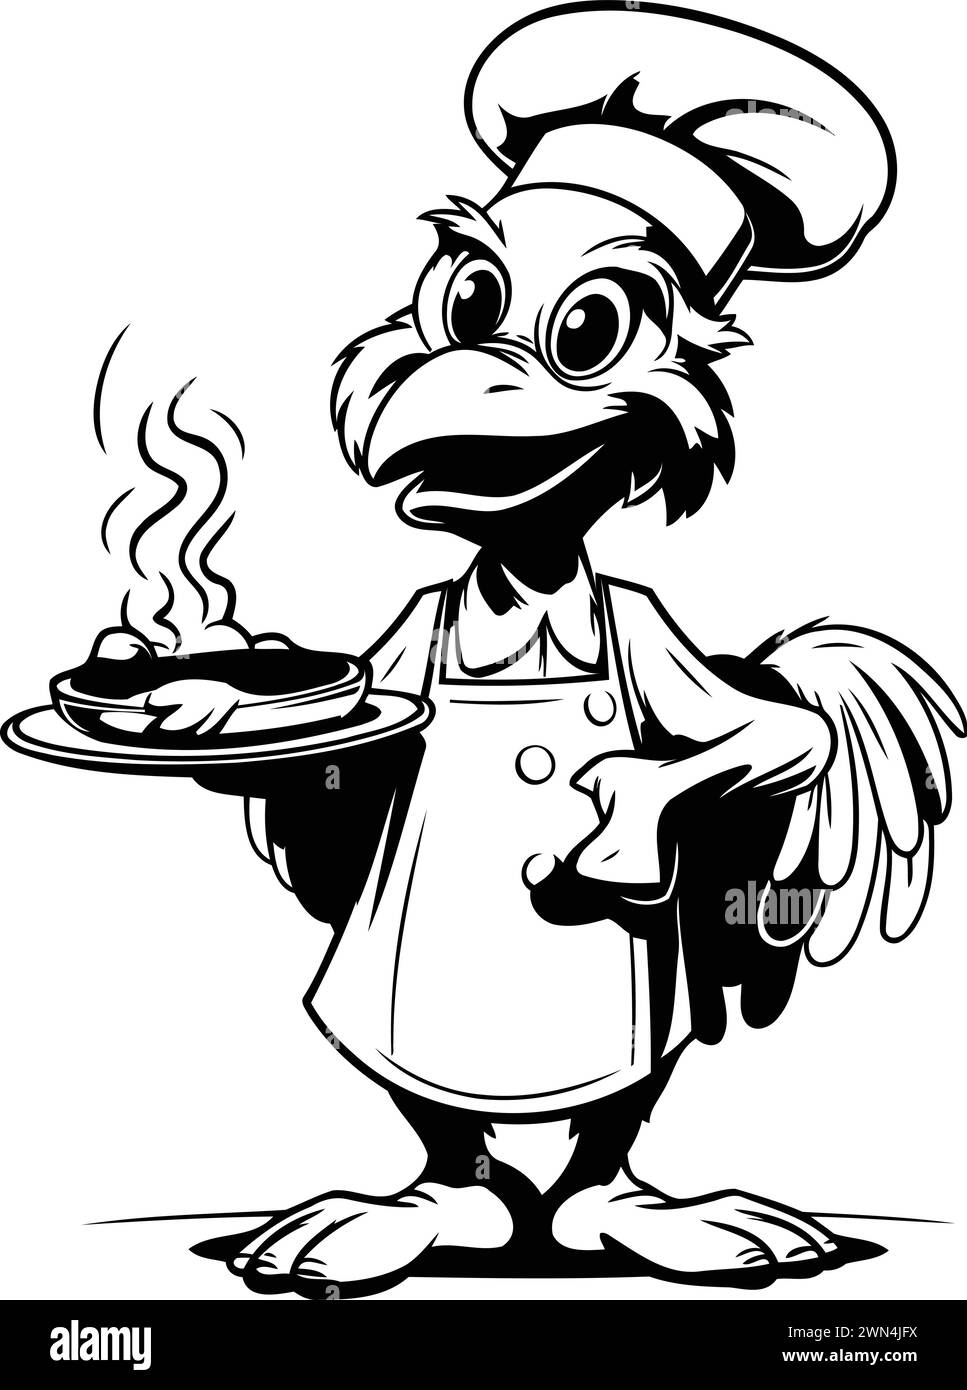 Illustration vectorielle d'un chef de bande dessinée avec une assiette de nourriture dans ses mains. Illustration de Vecteur